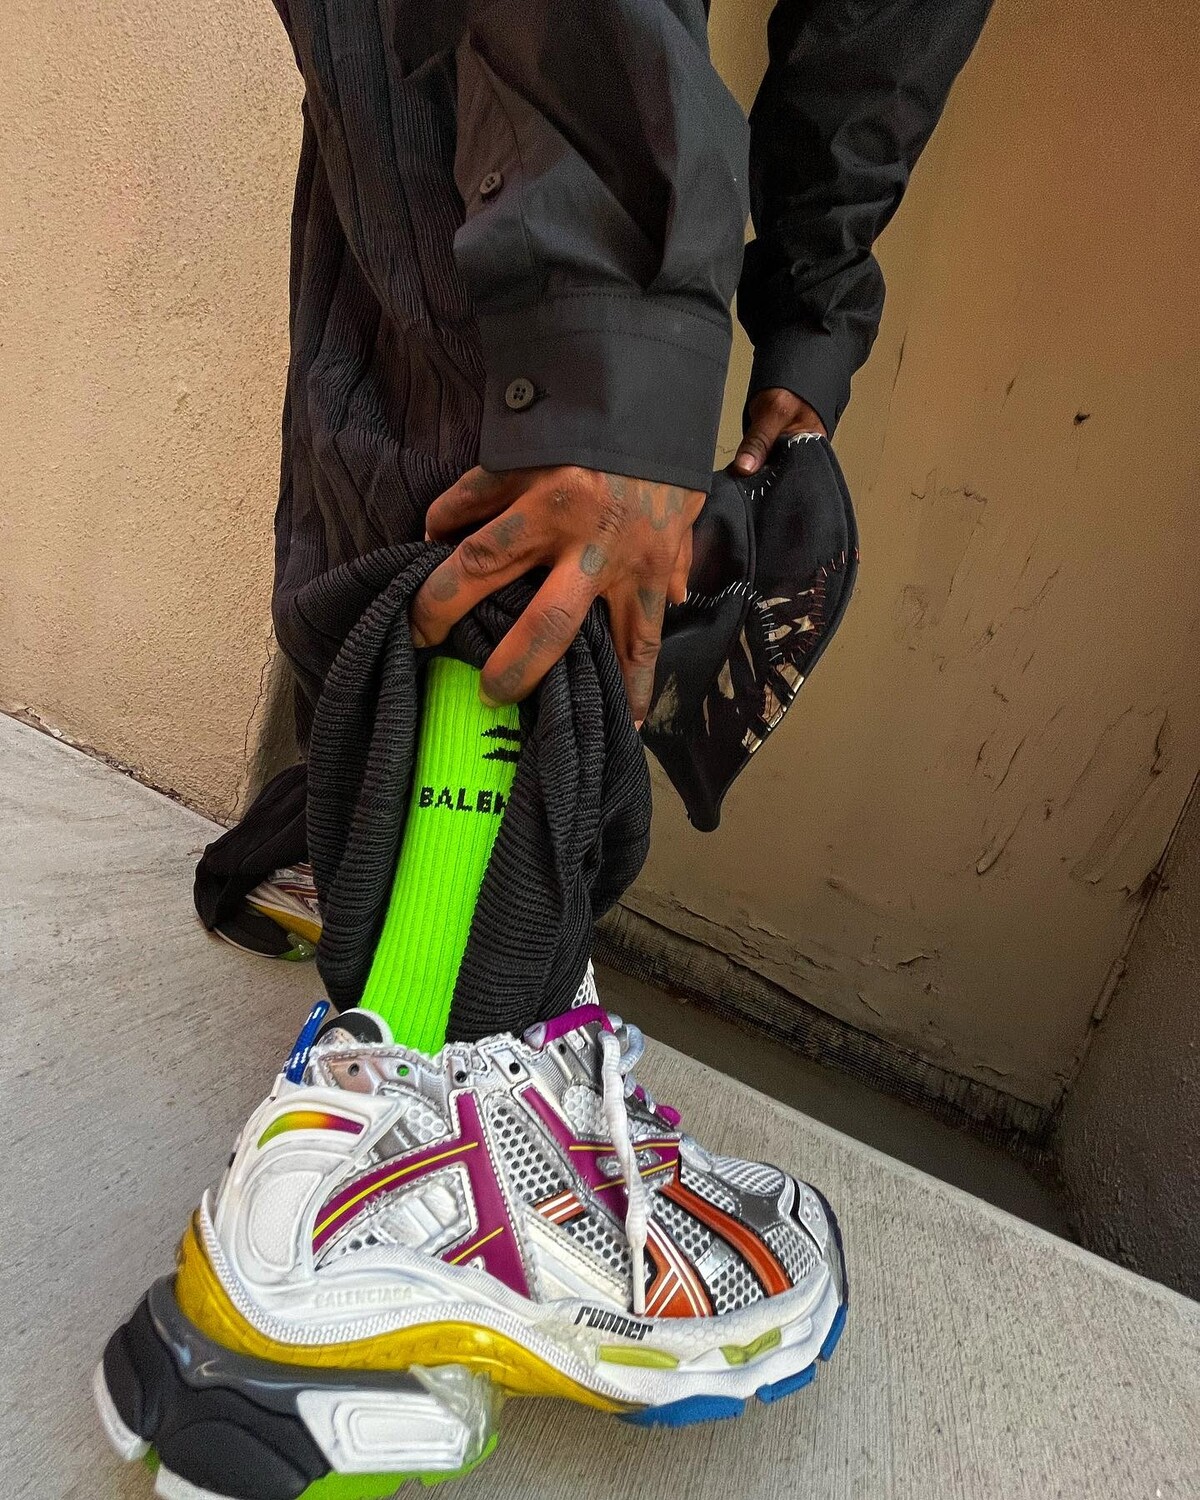 UpscaleHype - Lil Uzi Vert wears Nike x MMW Sneakers, 1017 Alyx